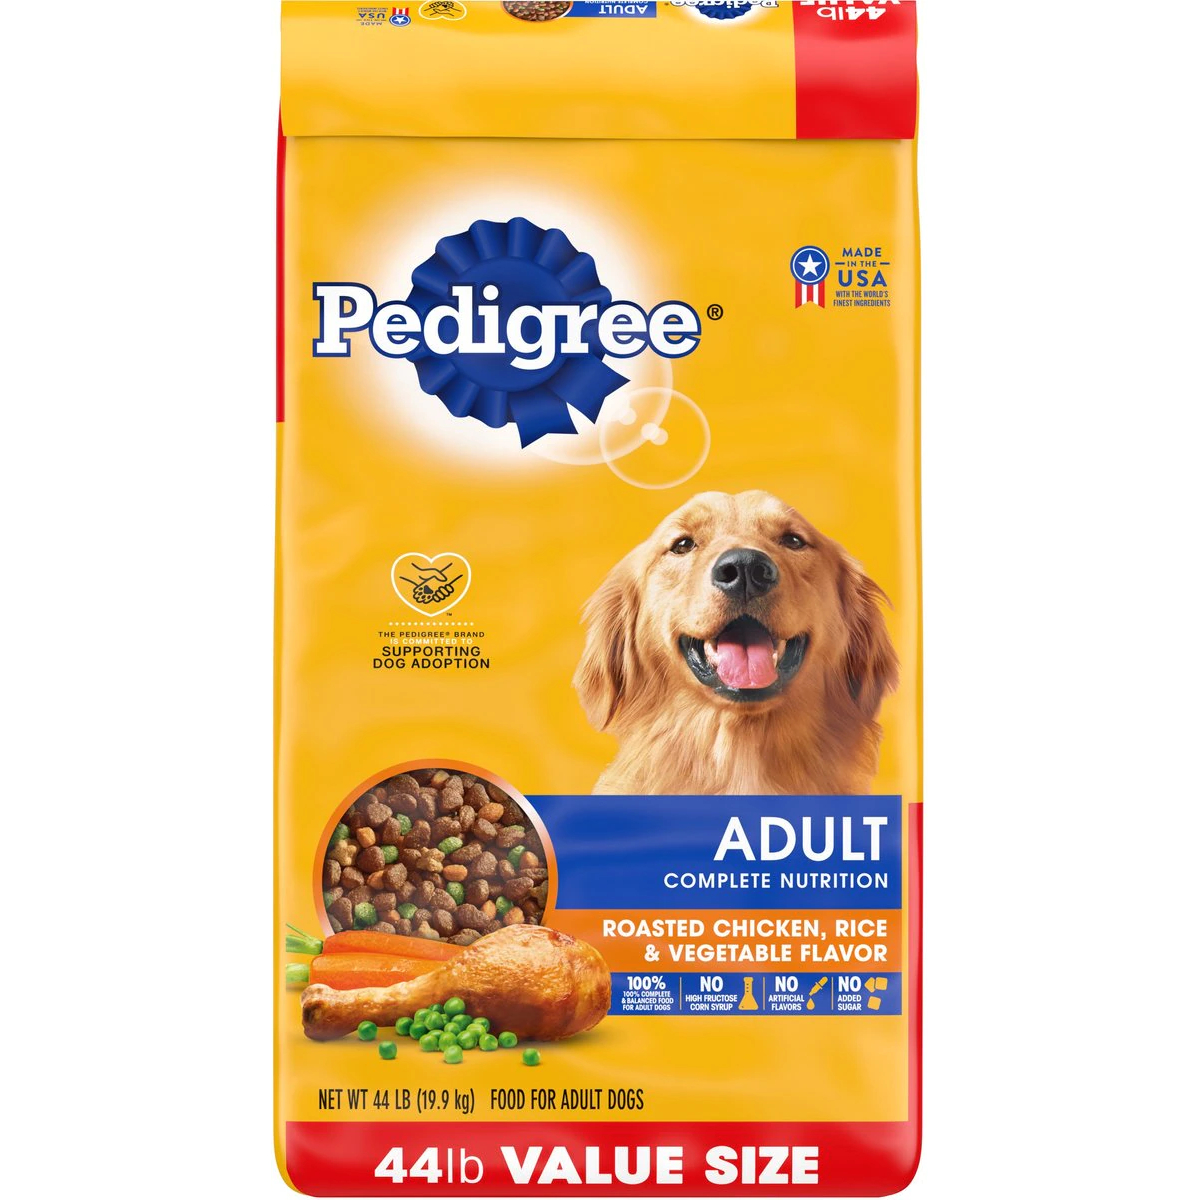 Pedigree Complete Nutrition Roasted Chicken, Rice & Vegetable Flavor Dog Kibble Adult Dry Dog Food